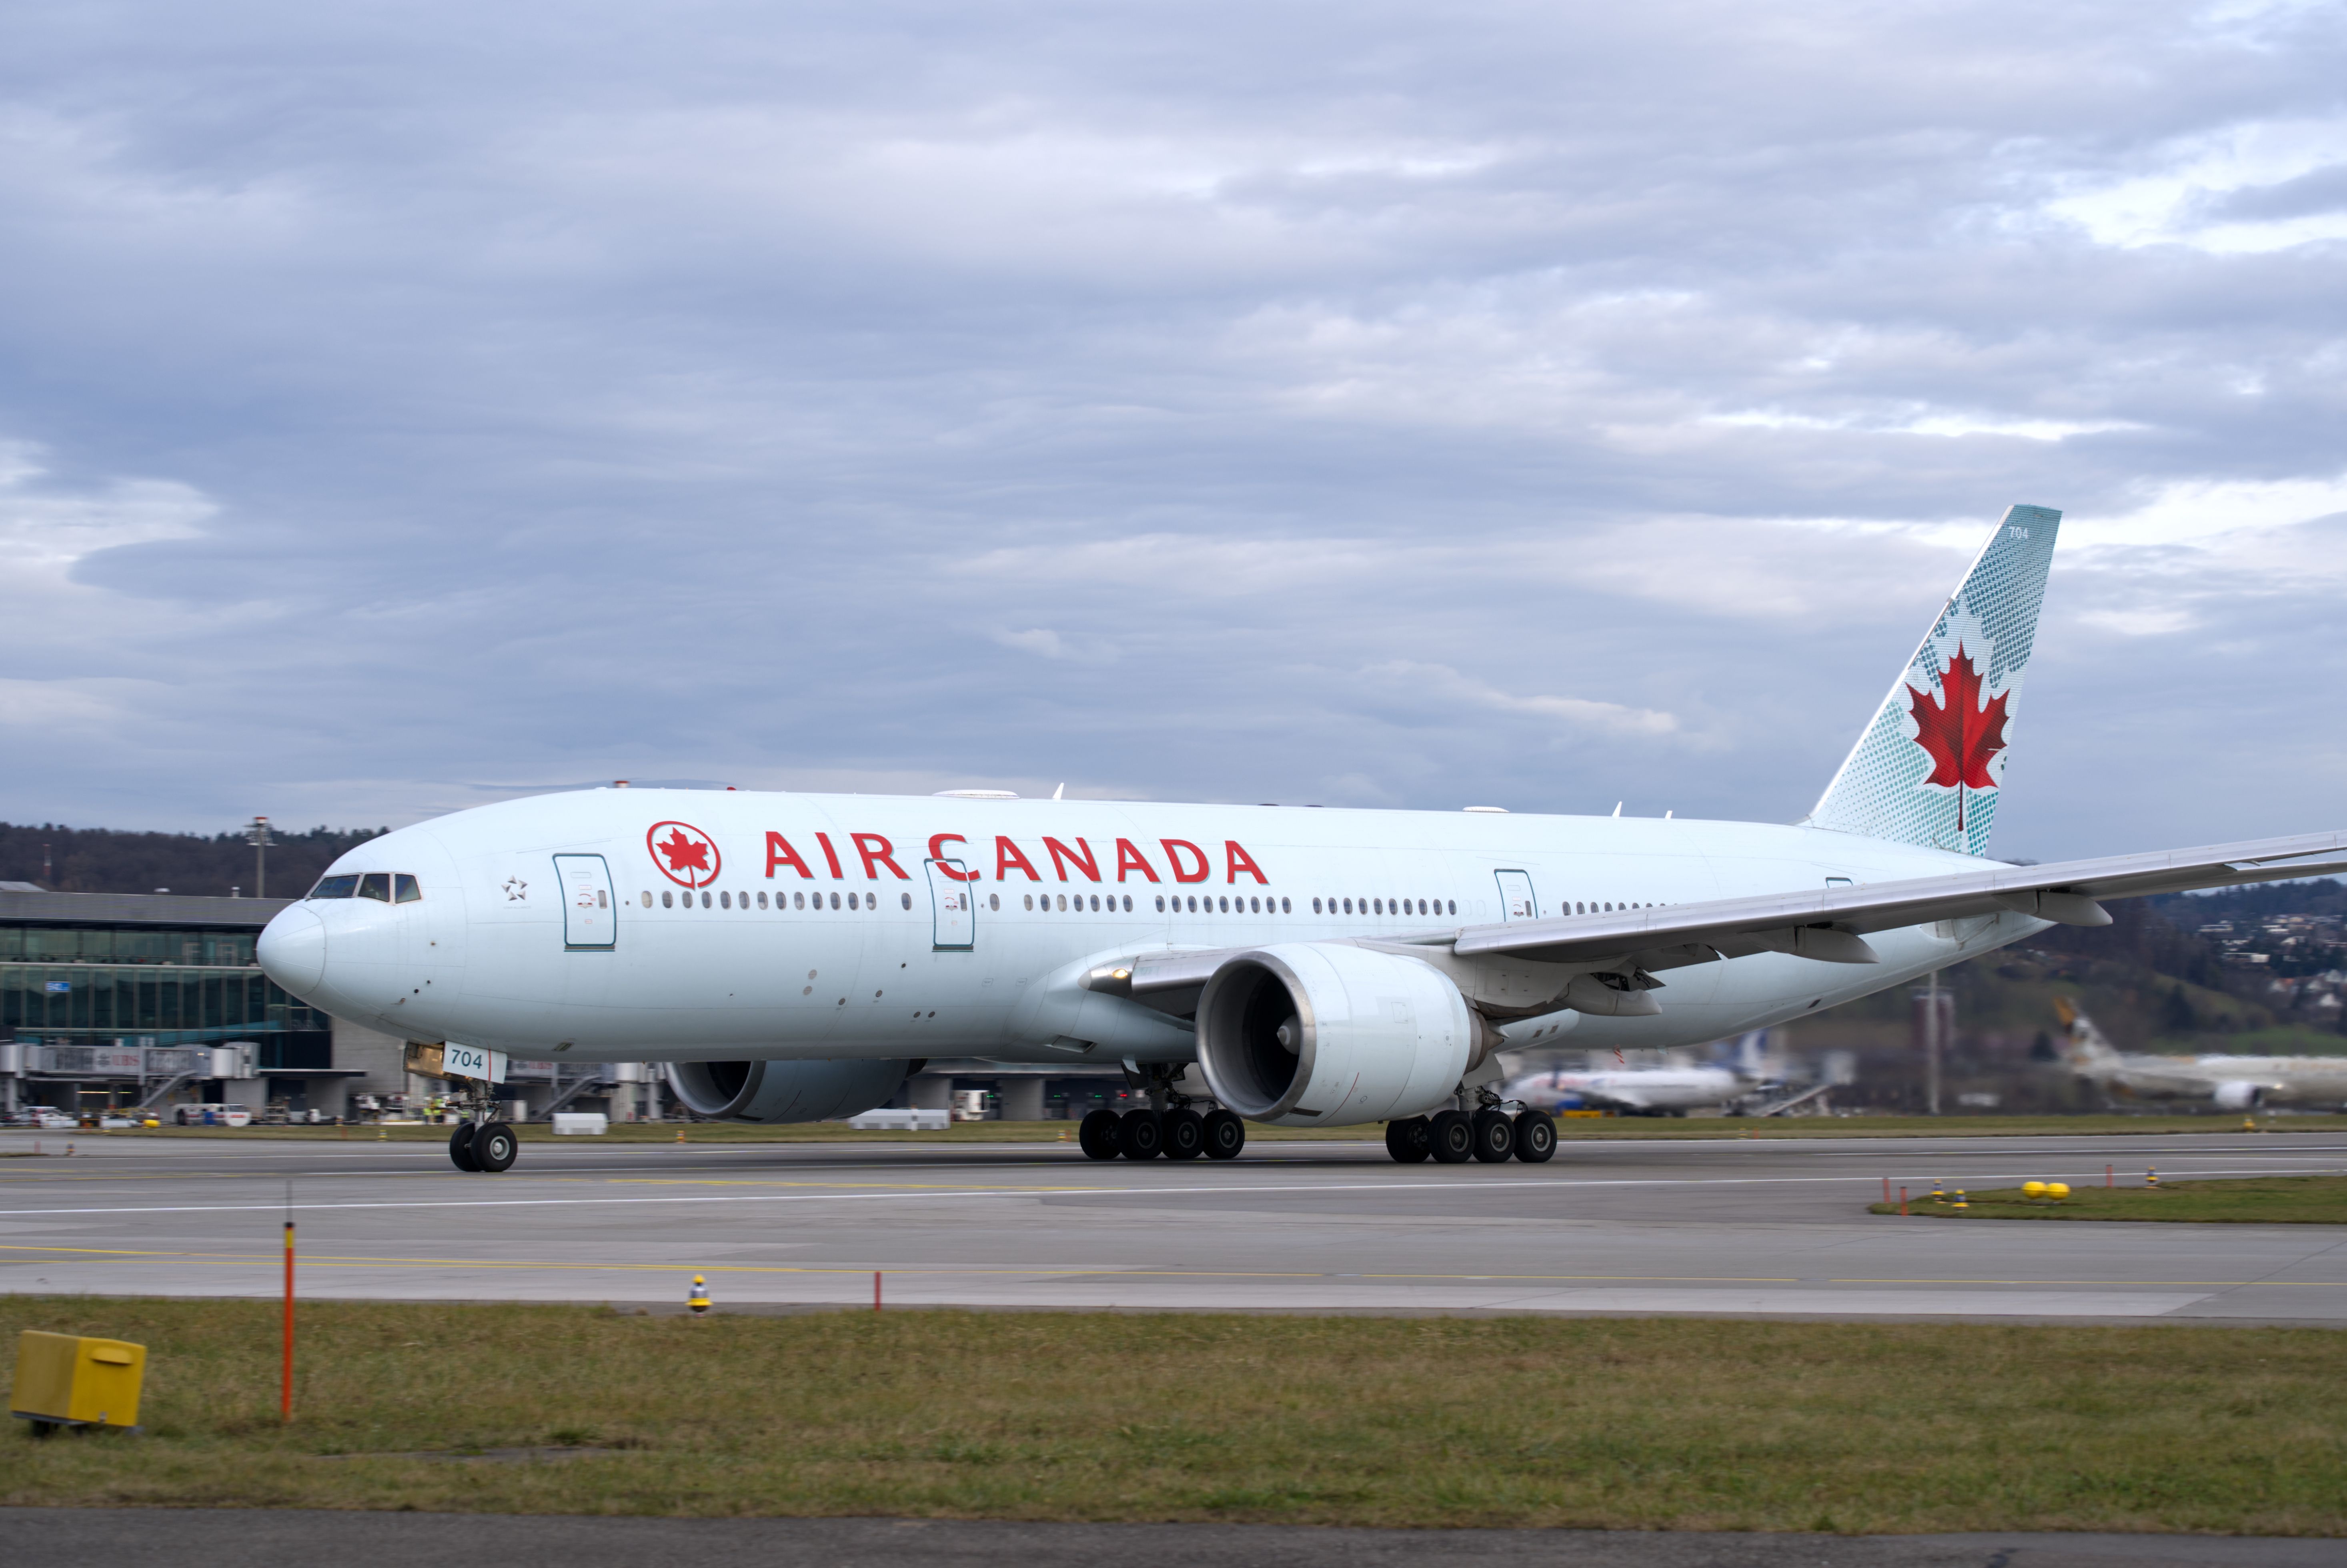 Air Canada 777-200LR